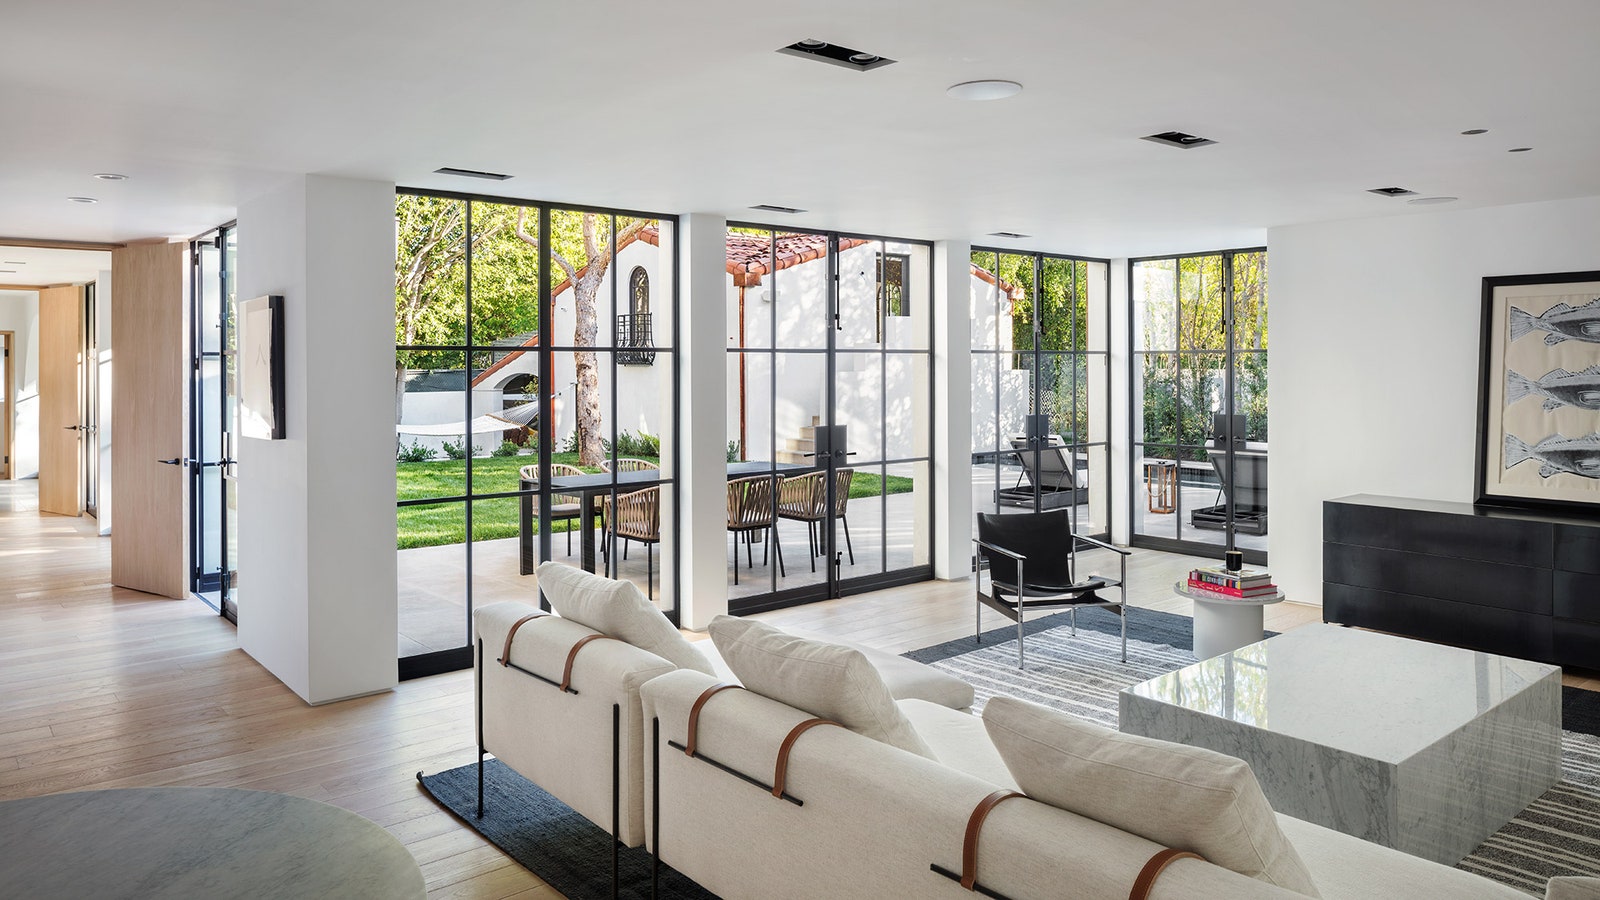 Дизайн интерьера дома в БеверлиХиллз по проекту Standard Architecture